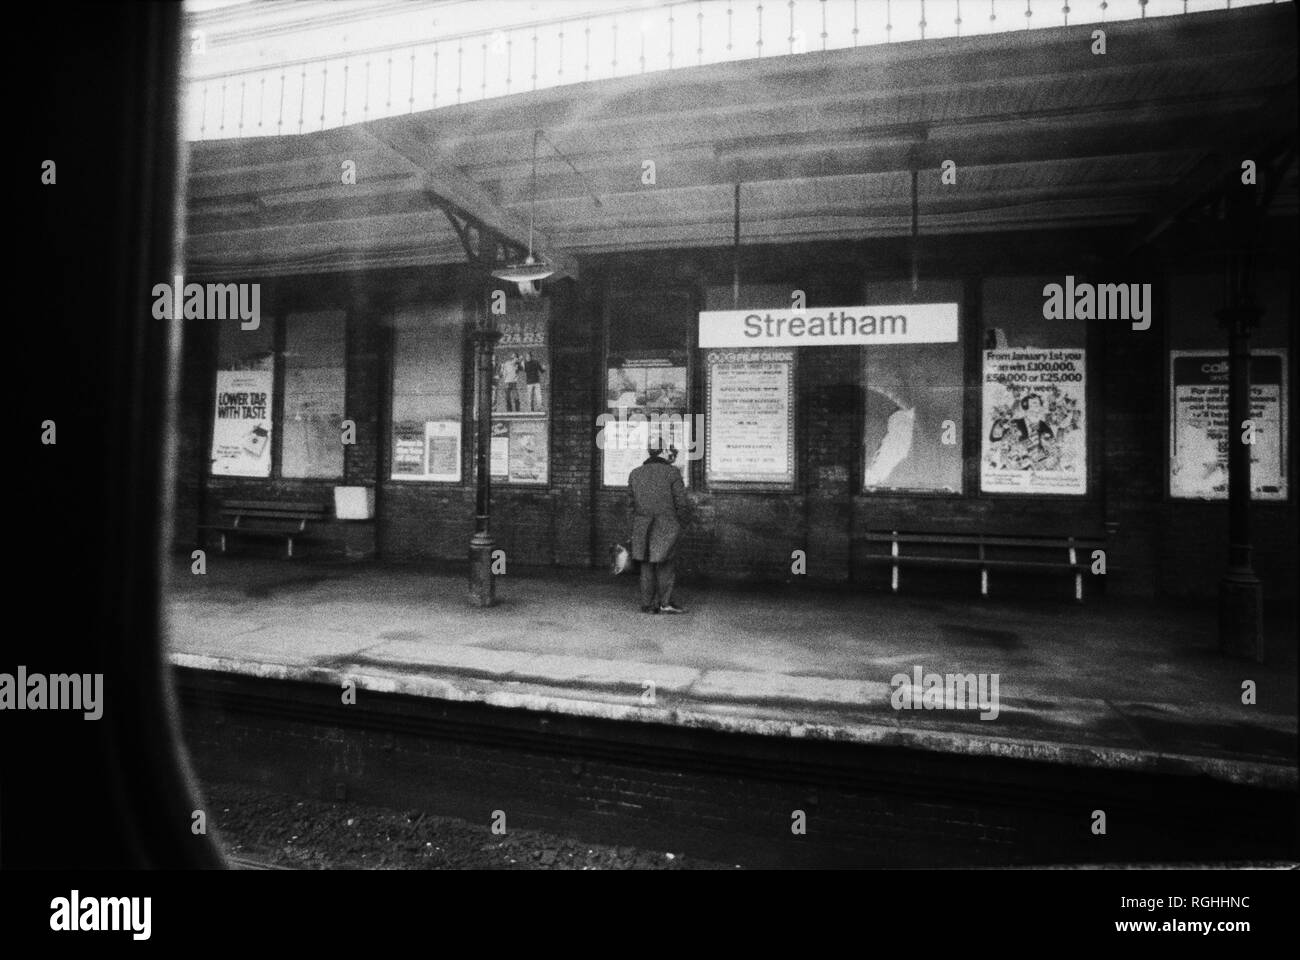 Image d'archive d'un homme seul debout sur Streatham British Rail Station, Londres, Angleterre, 1979, l'air à travers la fenêtre d'un train porte-slam Banque D'Images